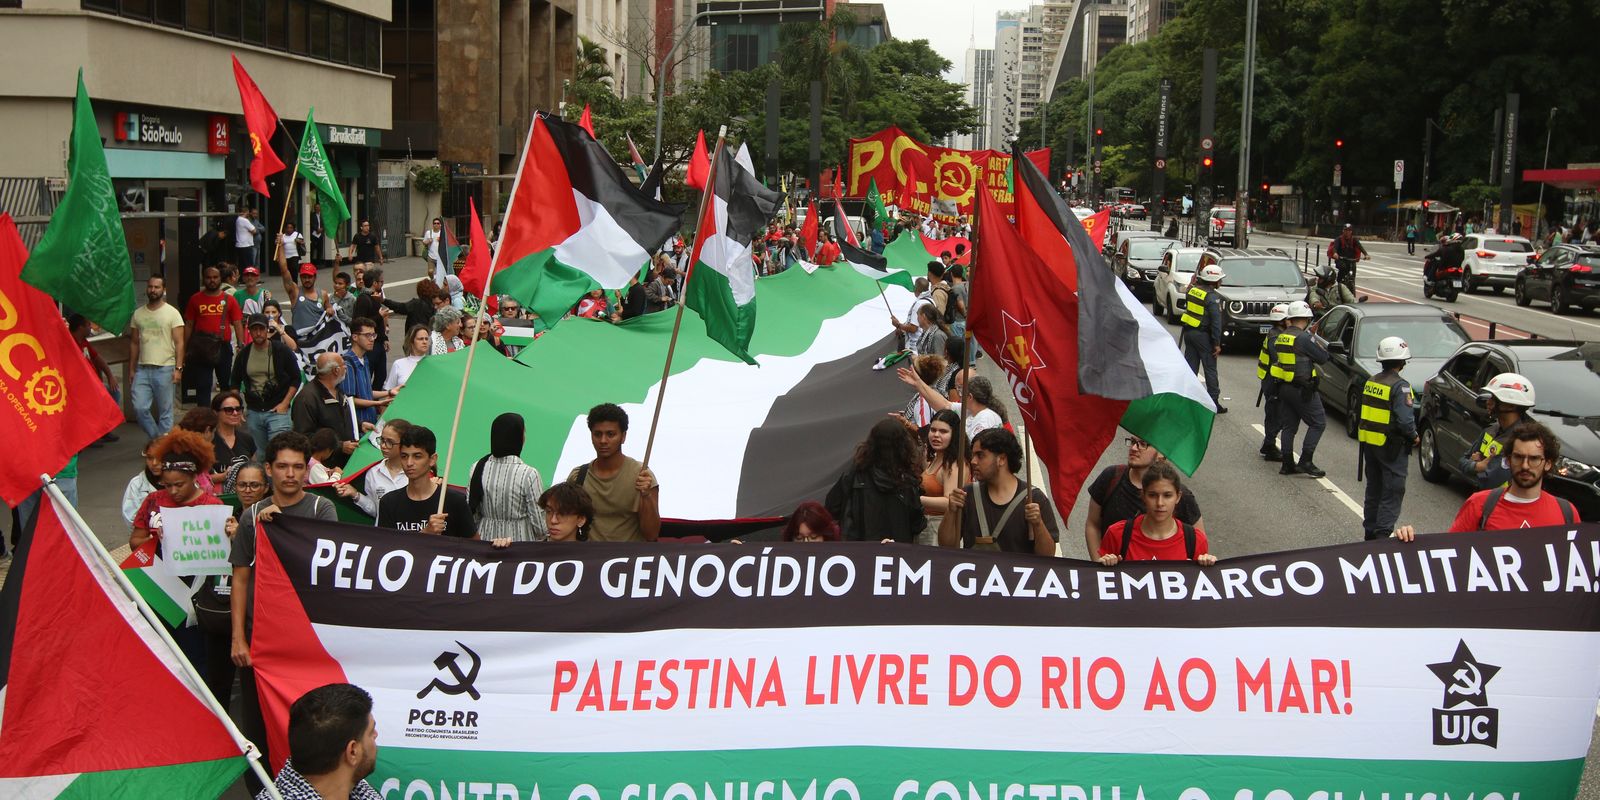 ato-em-sp-de-apoio-a-palestina-pede-cessar-fogo-imediato-em-gaza